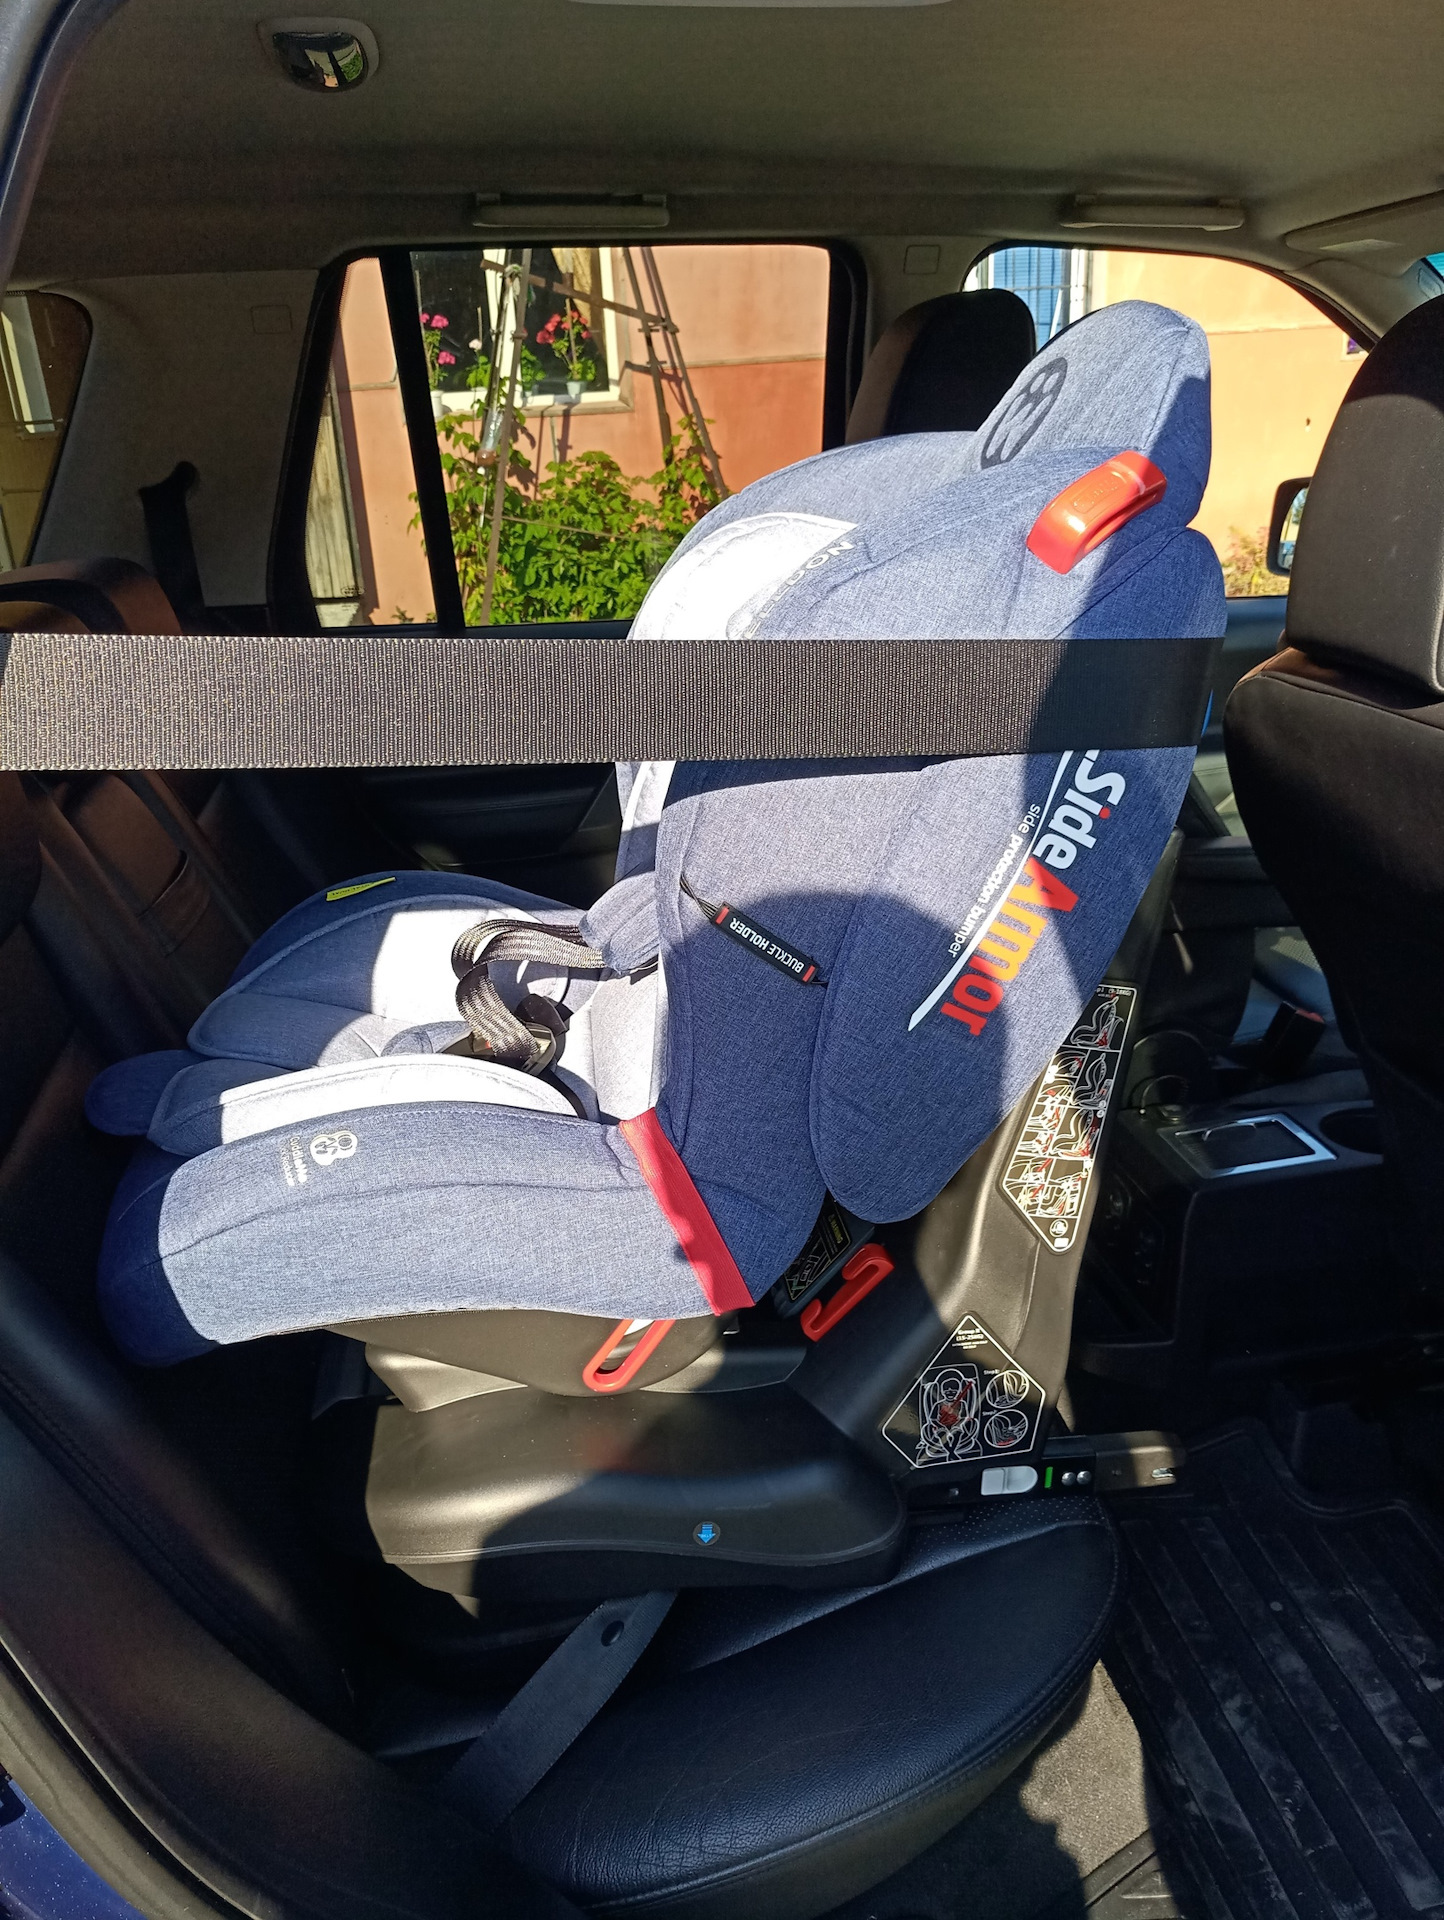 Ремни для крепления детского кресла в автомобиле